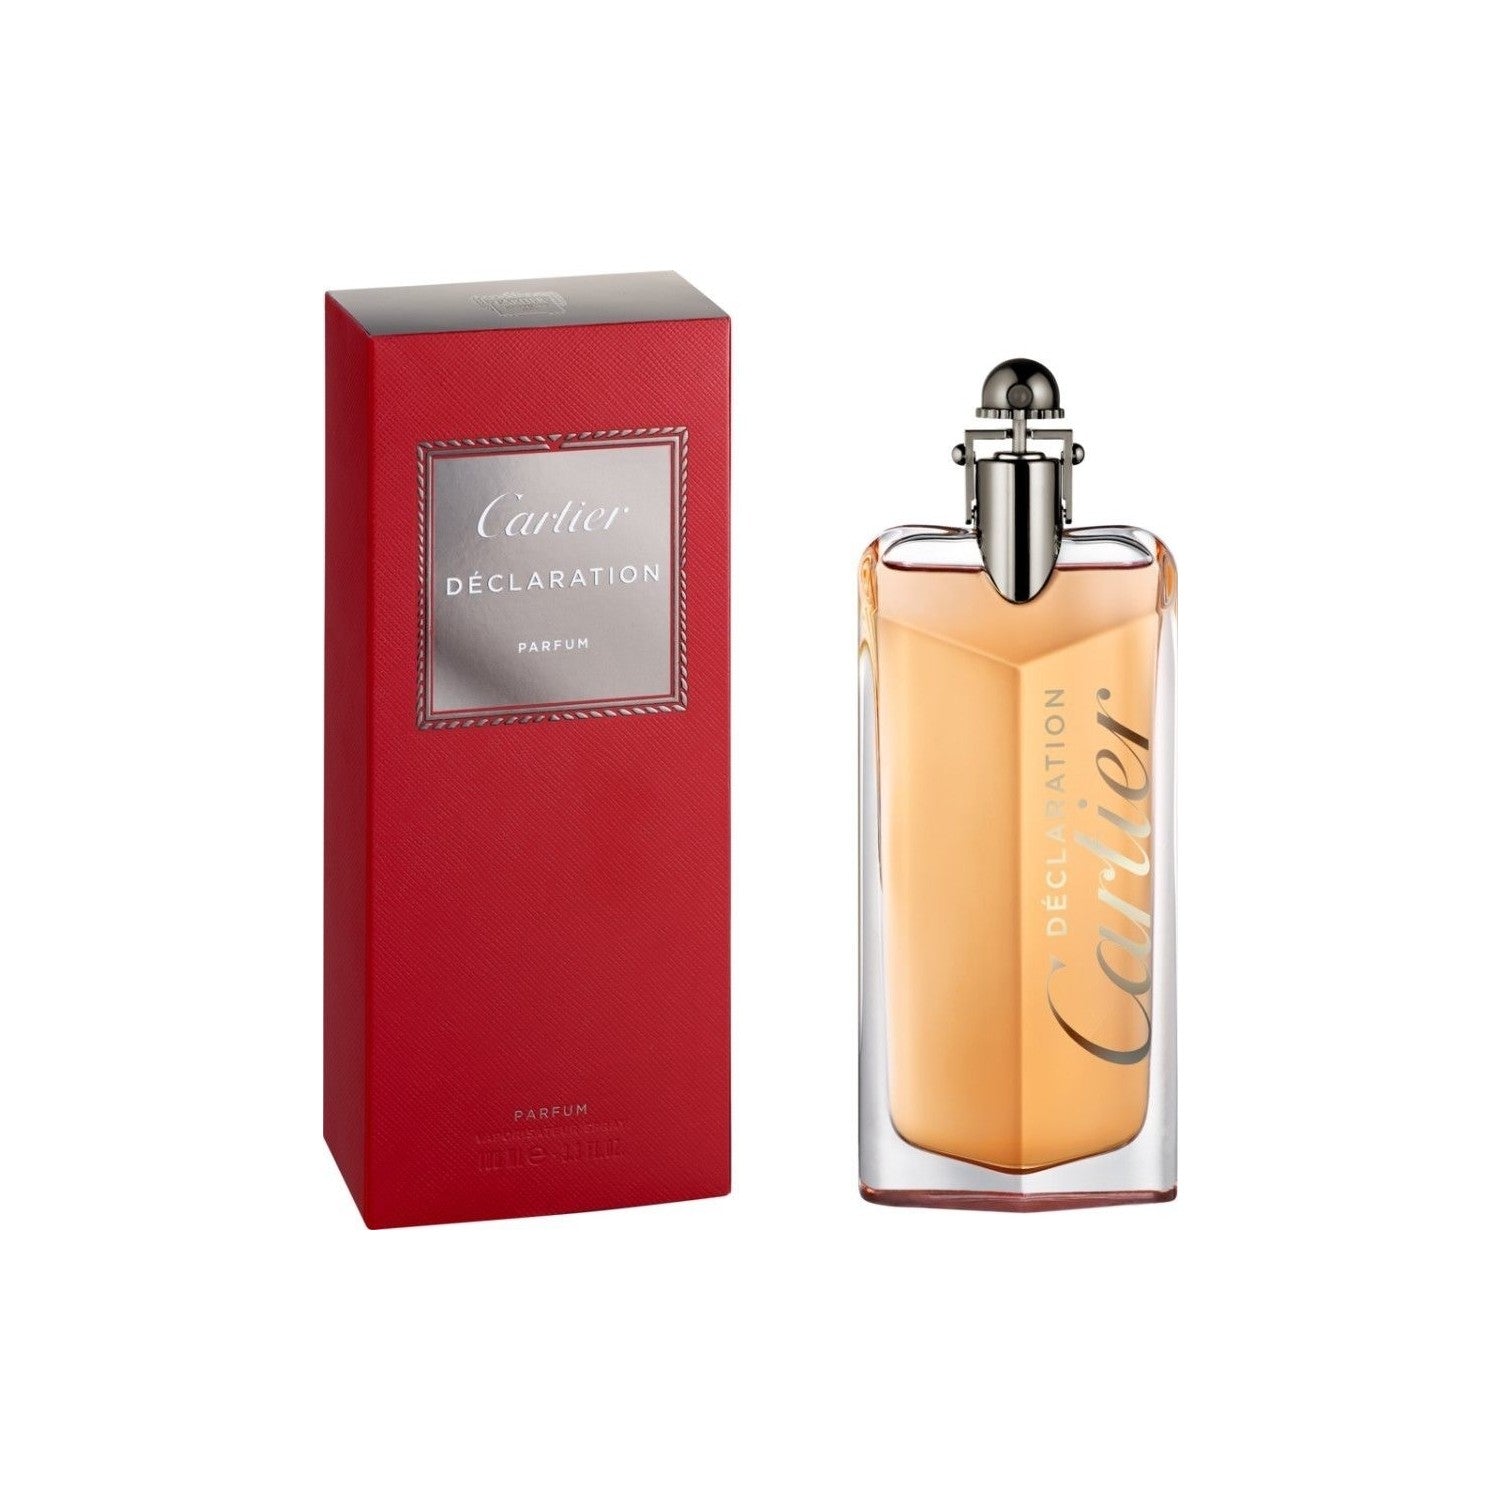 Cartier Declaration Parfum M 100ml Boxed (Rare Selection)